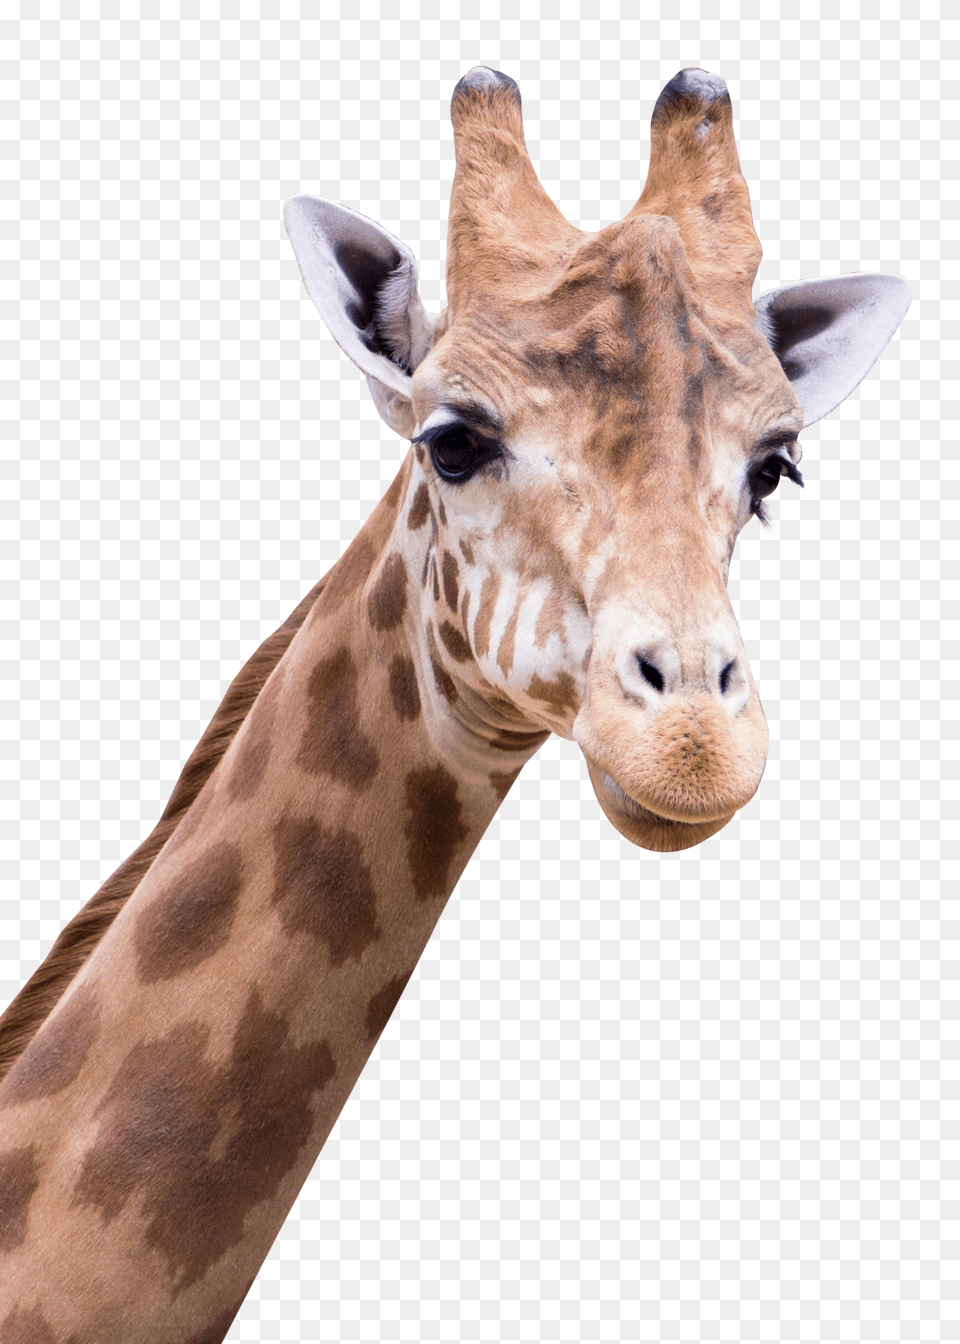 Images Giraffe Transparent Image, Animal, Mammal, Wildlife Png